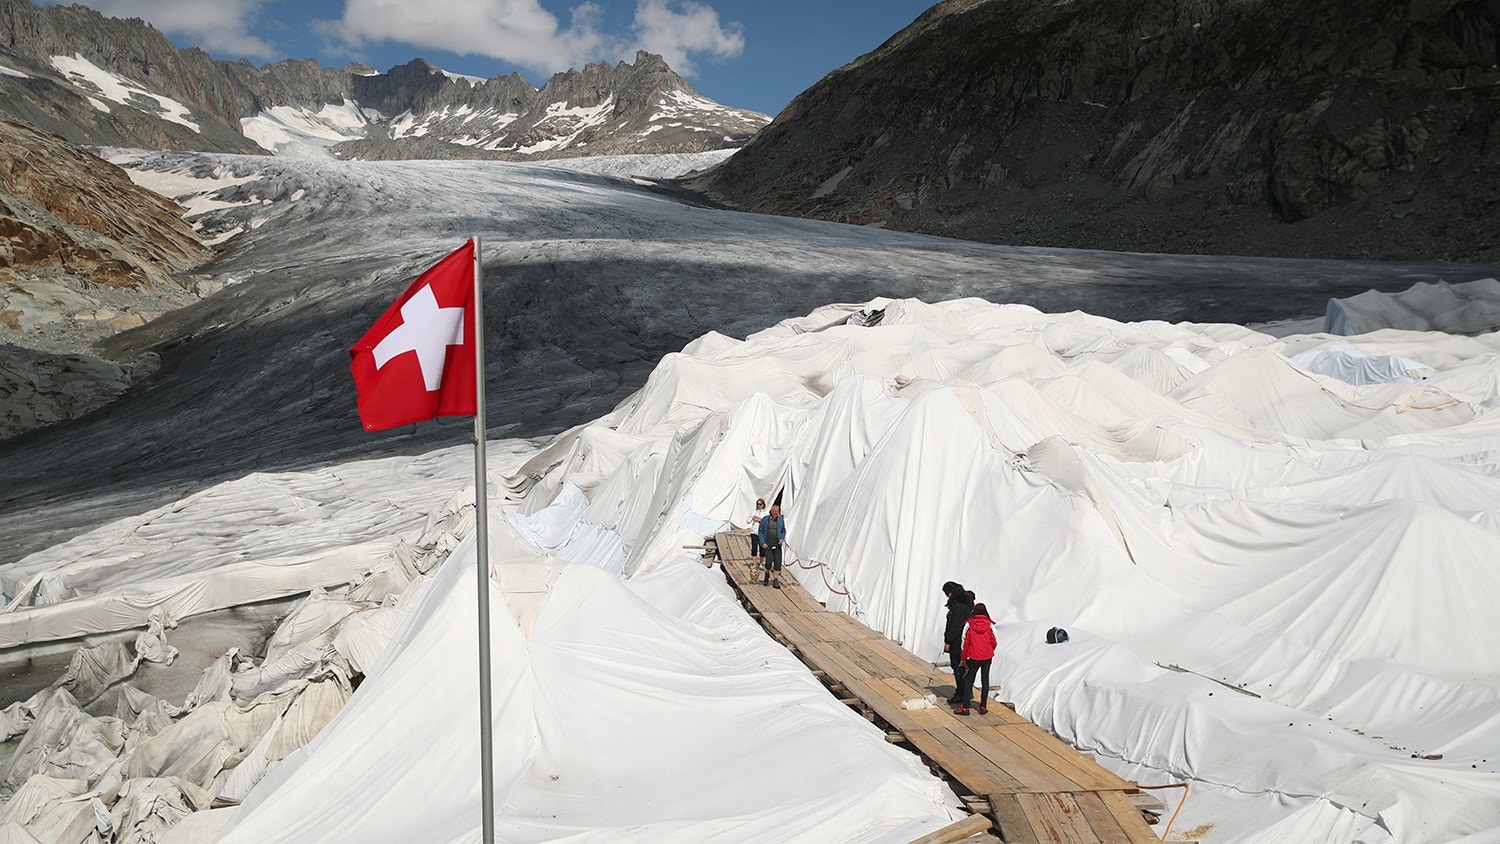  Pessoas visitam a caverna de gelo coberta com material para evitar que o gelo derreta, no Glaciar Rhone na Furka, Su&iacute;&ccedil;a, 21 de agosto de 2019. | Denis Balibouse - Reuters 